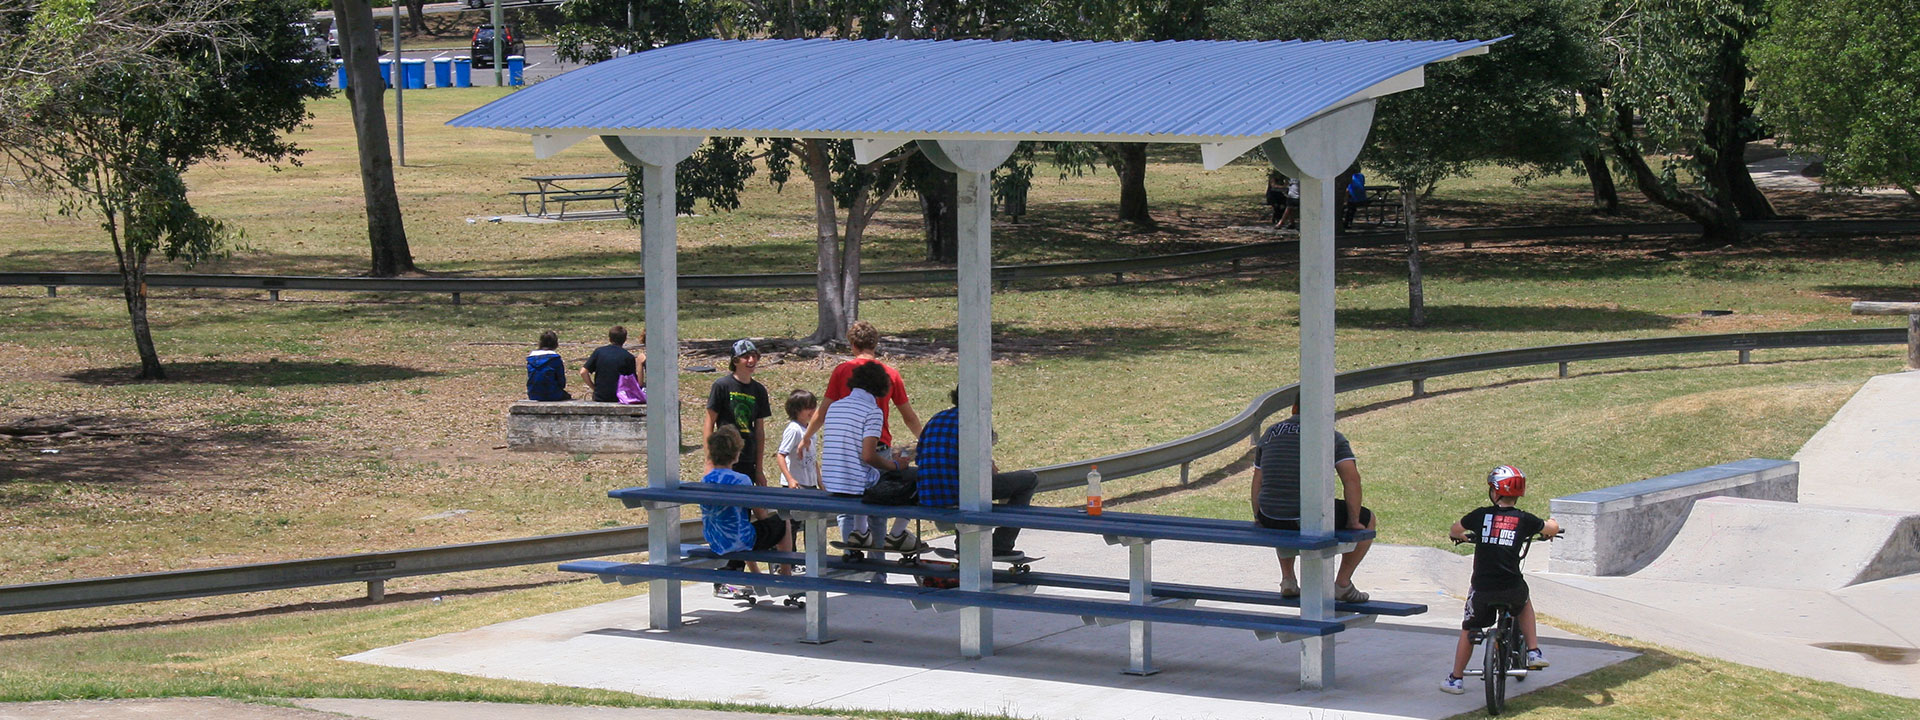 Paragon skate park shelter design installed at Gympie